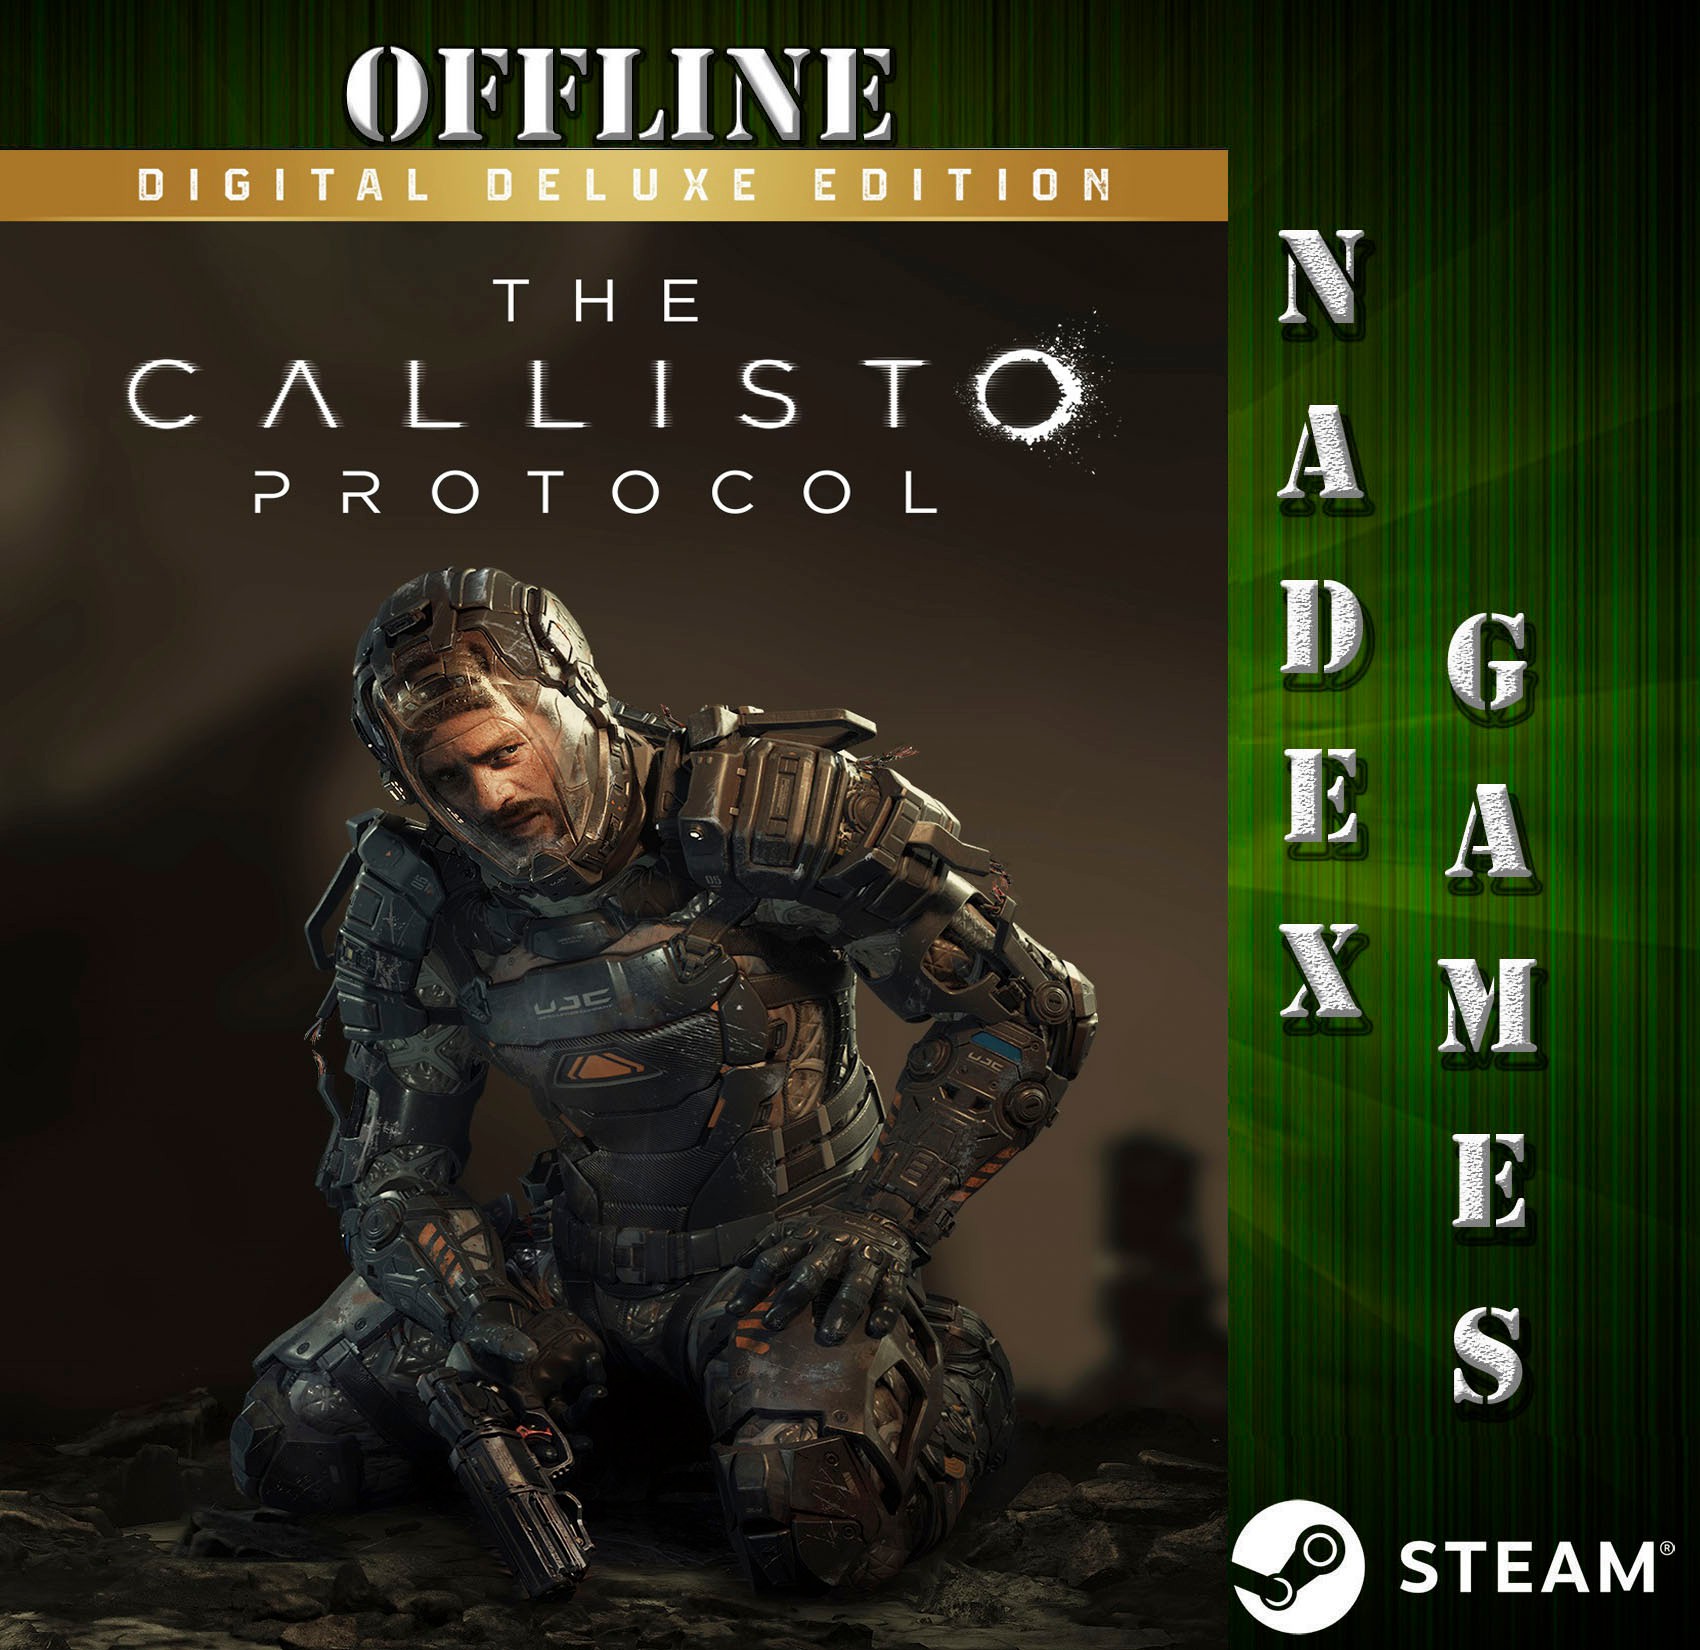 Por que novo game de terror Callisto Protocol foi proibido no